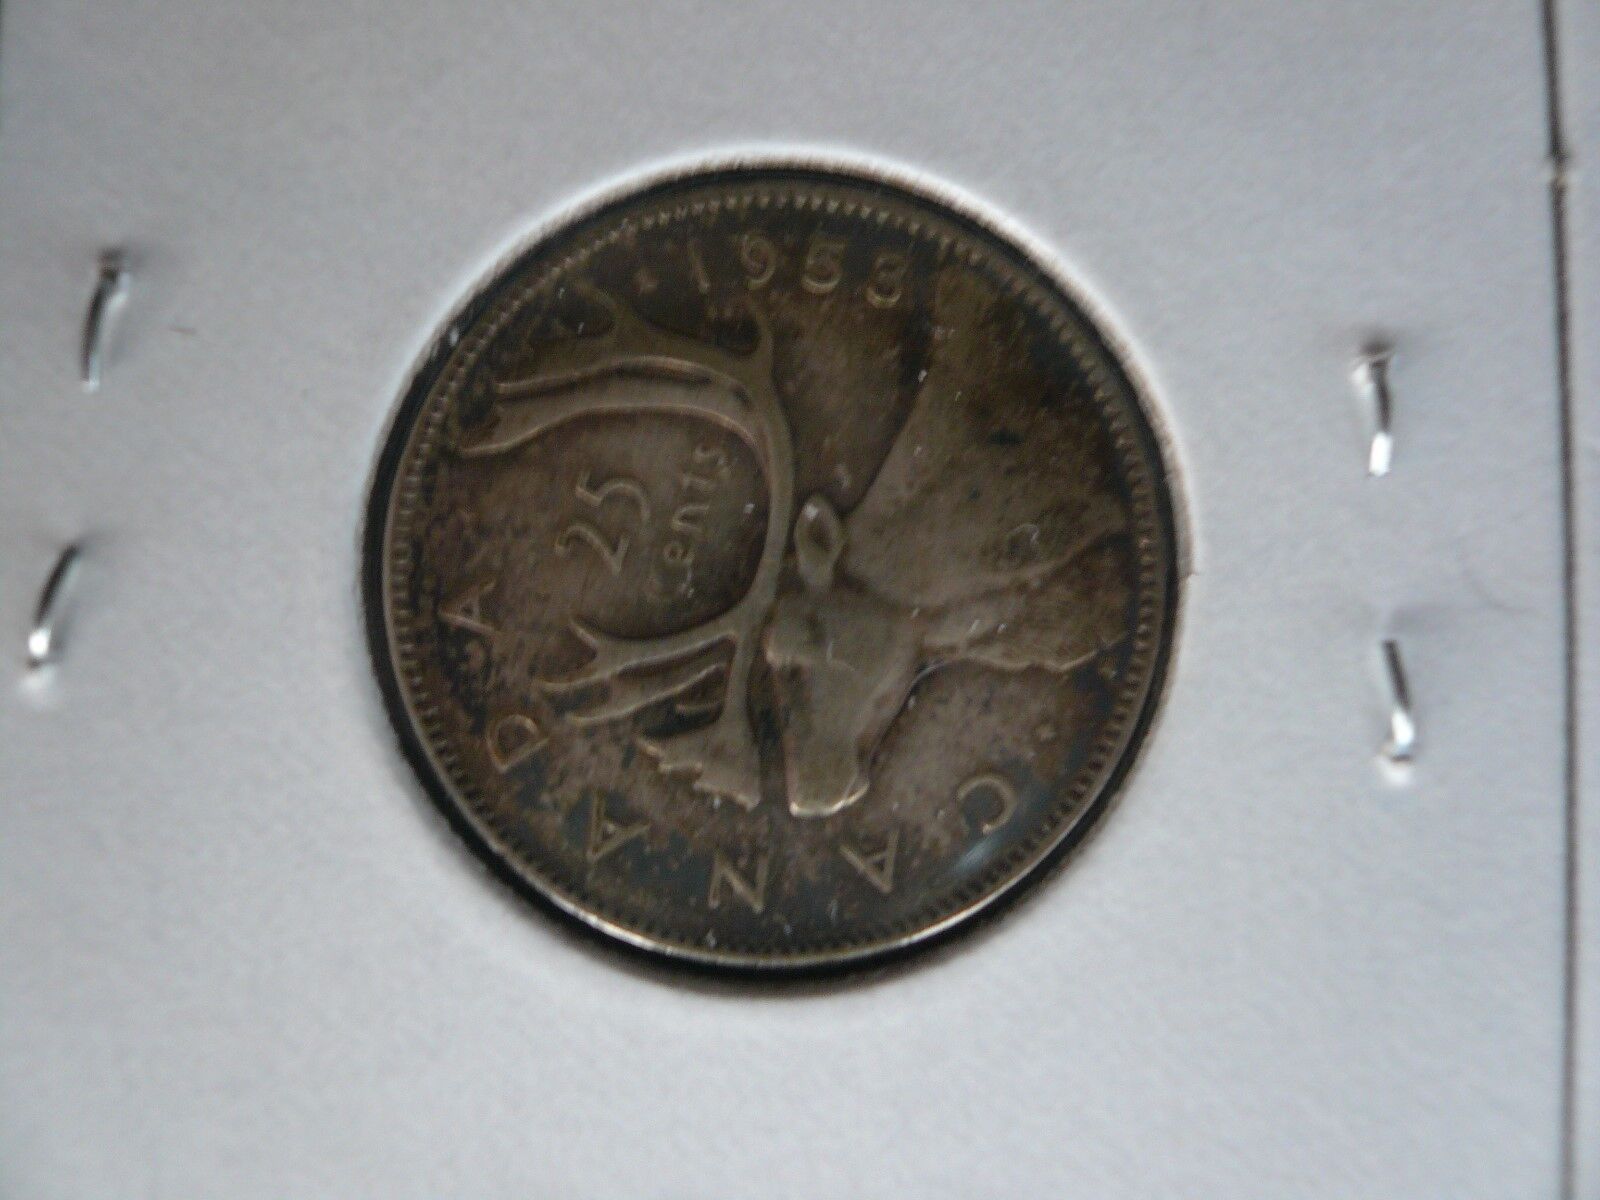 1953  CANADA 25 CENTS "LARGE DATE 1953" ELIZABETH II 80% SILVER SET OF 2 COINS Без бренда - фотография #5